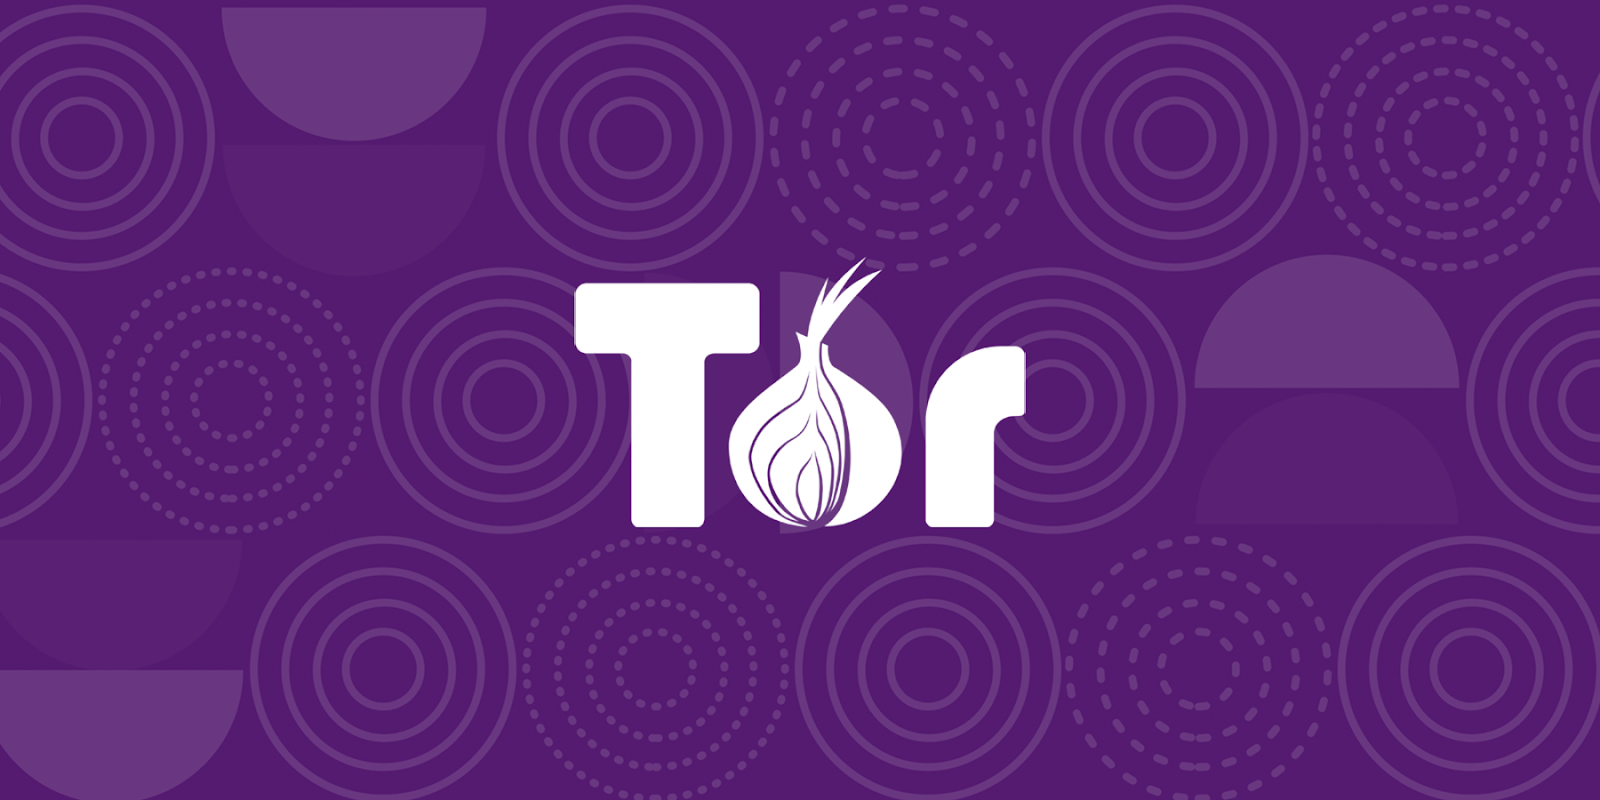 1. Przeglądarka Tor